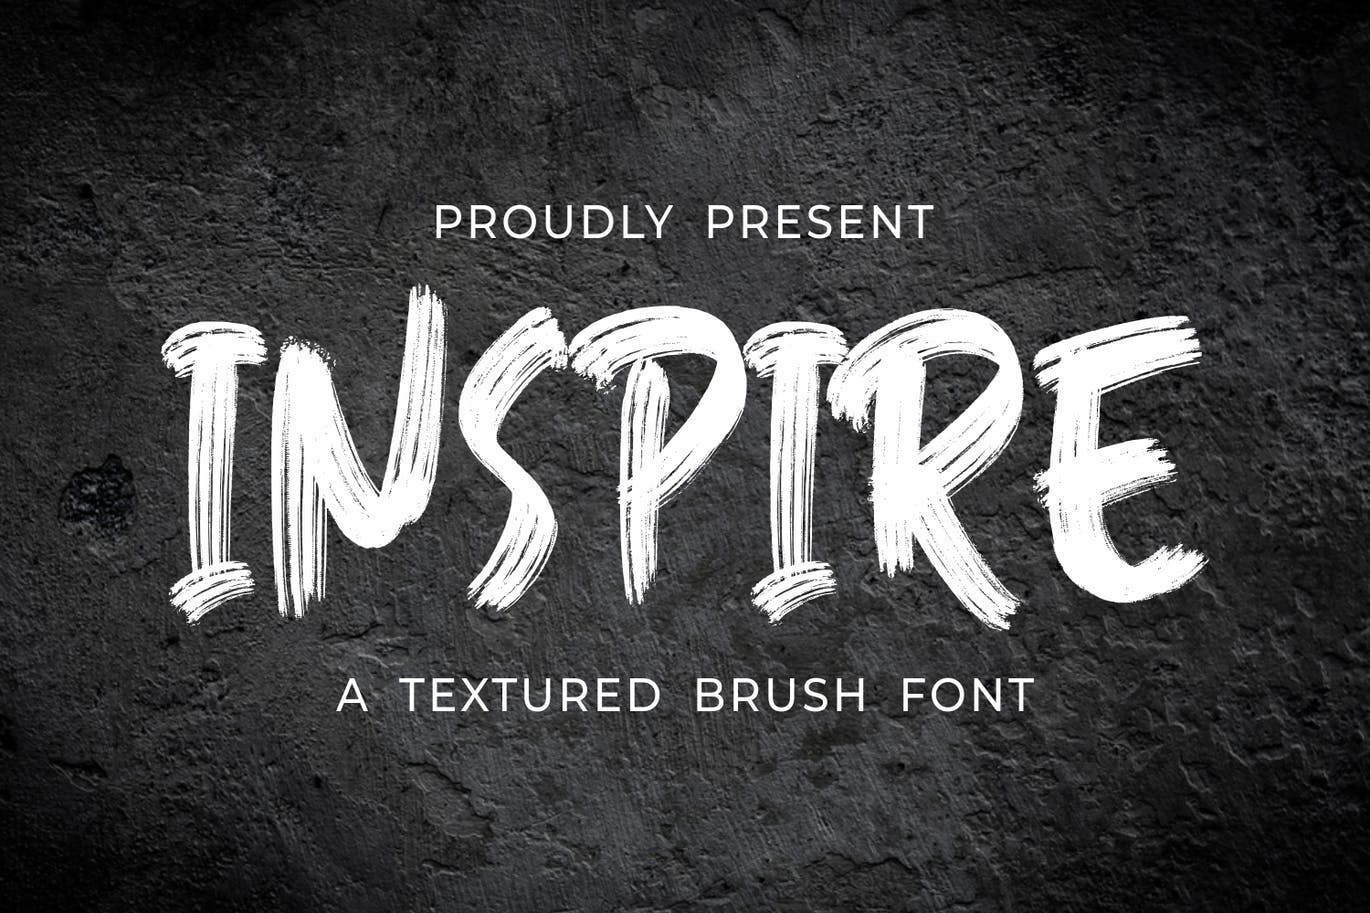 手写笔刷纹理字体素材 Inspired – Textured Brush Font 设计素材 第1张